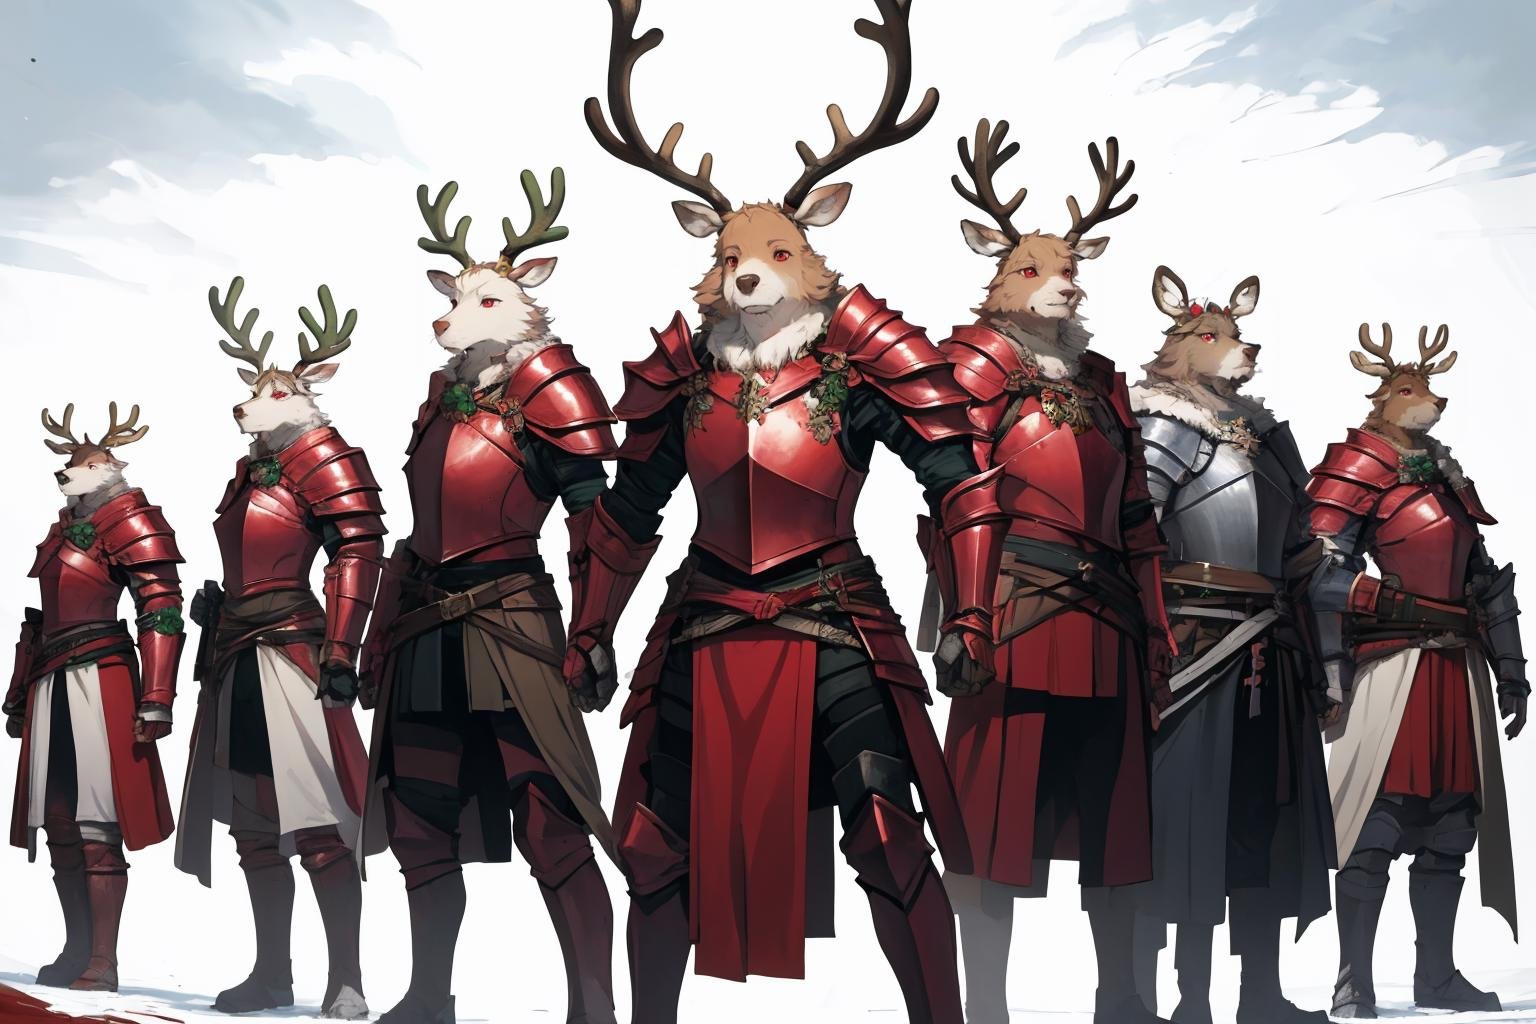 masterpiece, best quality, furry, reindeer antlers, standing, <lora:reindeerknight-oc-richy-v1:1> reindeerknight, multiple others, armor, shoulder armor, gauntlets, greaves, group, army, lineup, red eyes